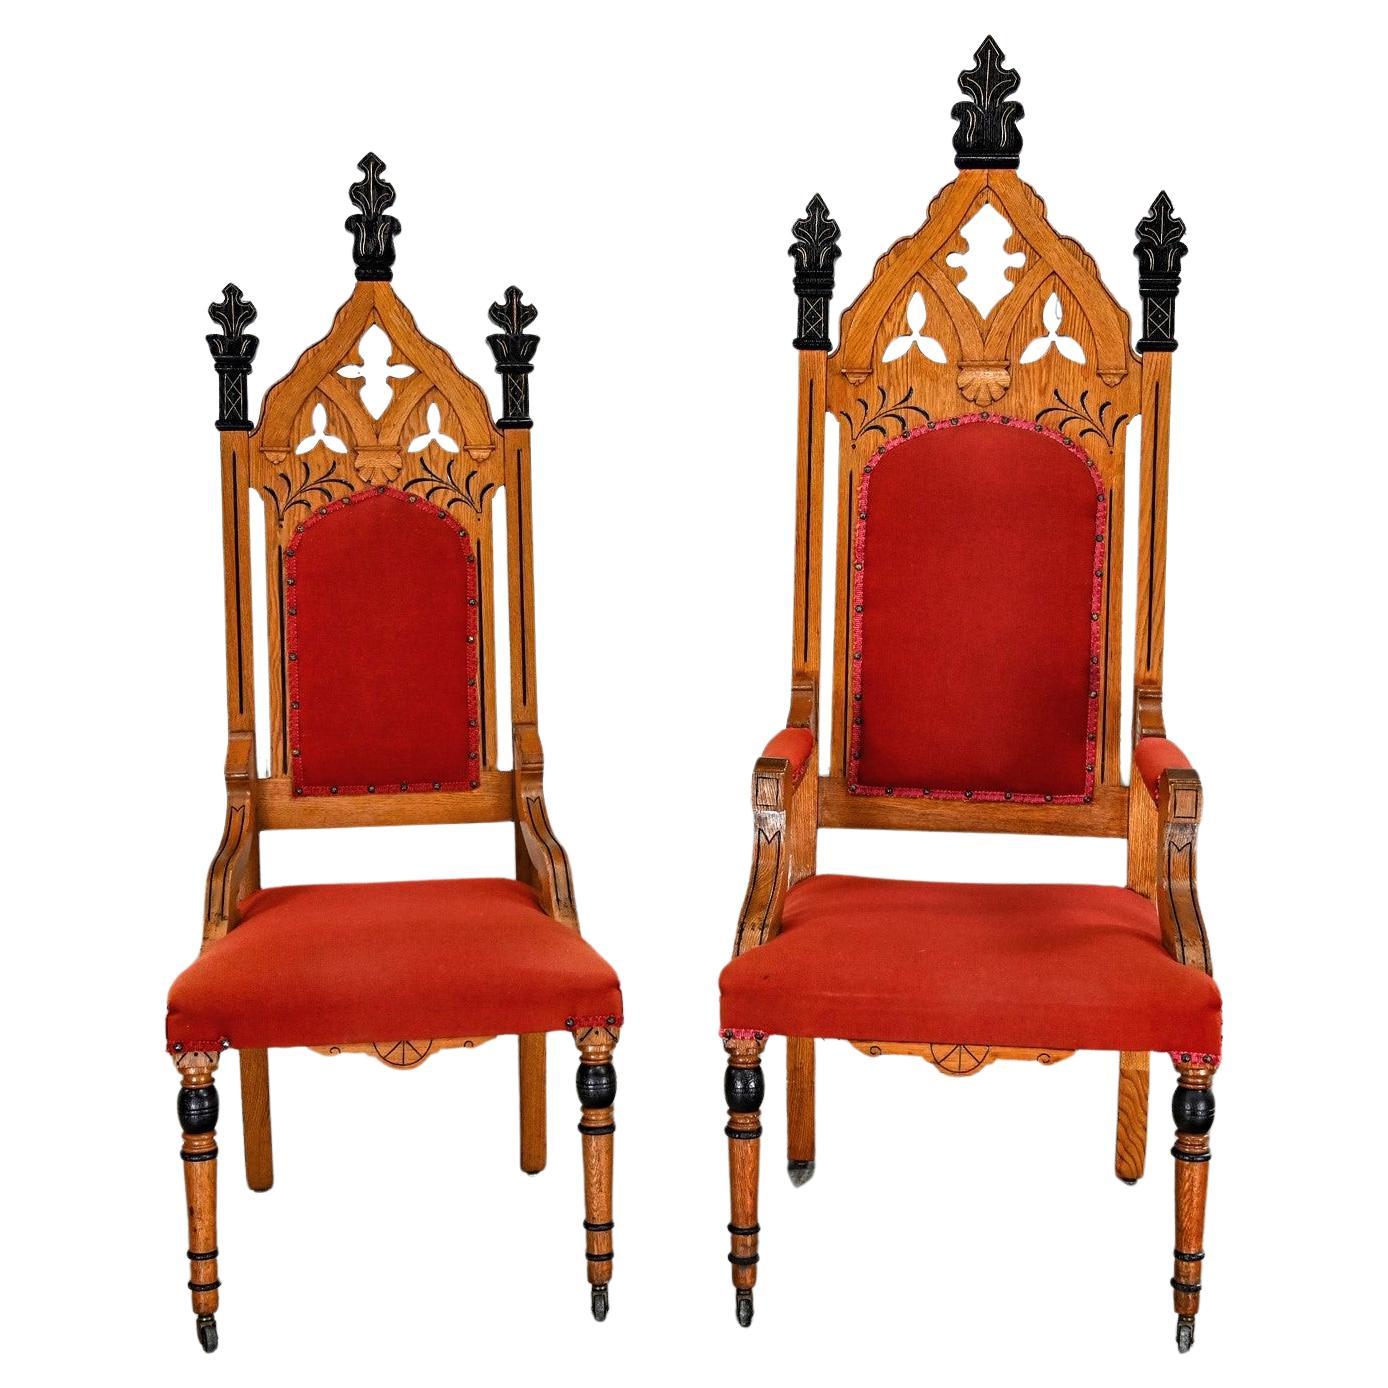 EICHE Viktorianische oder gotische Revival Ecclesiastical His & Hers Thron Stühle ein Paar